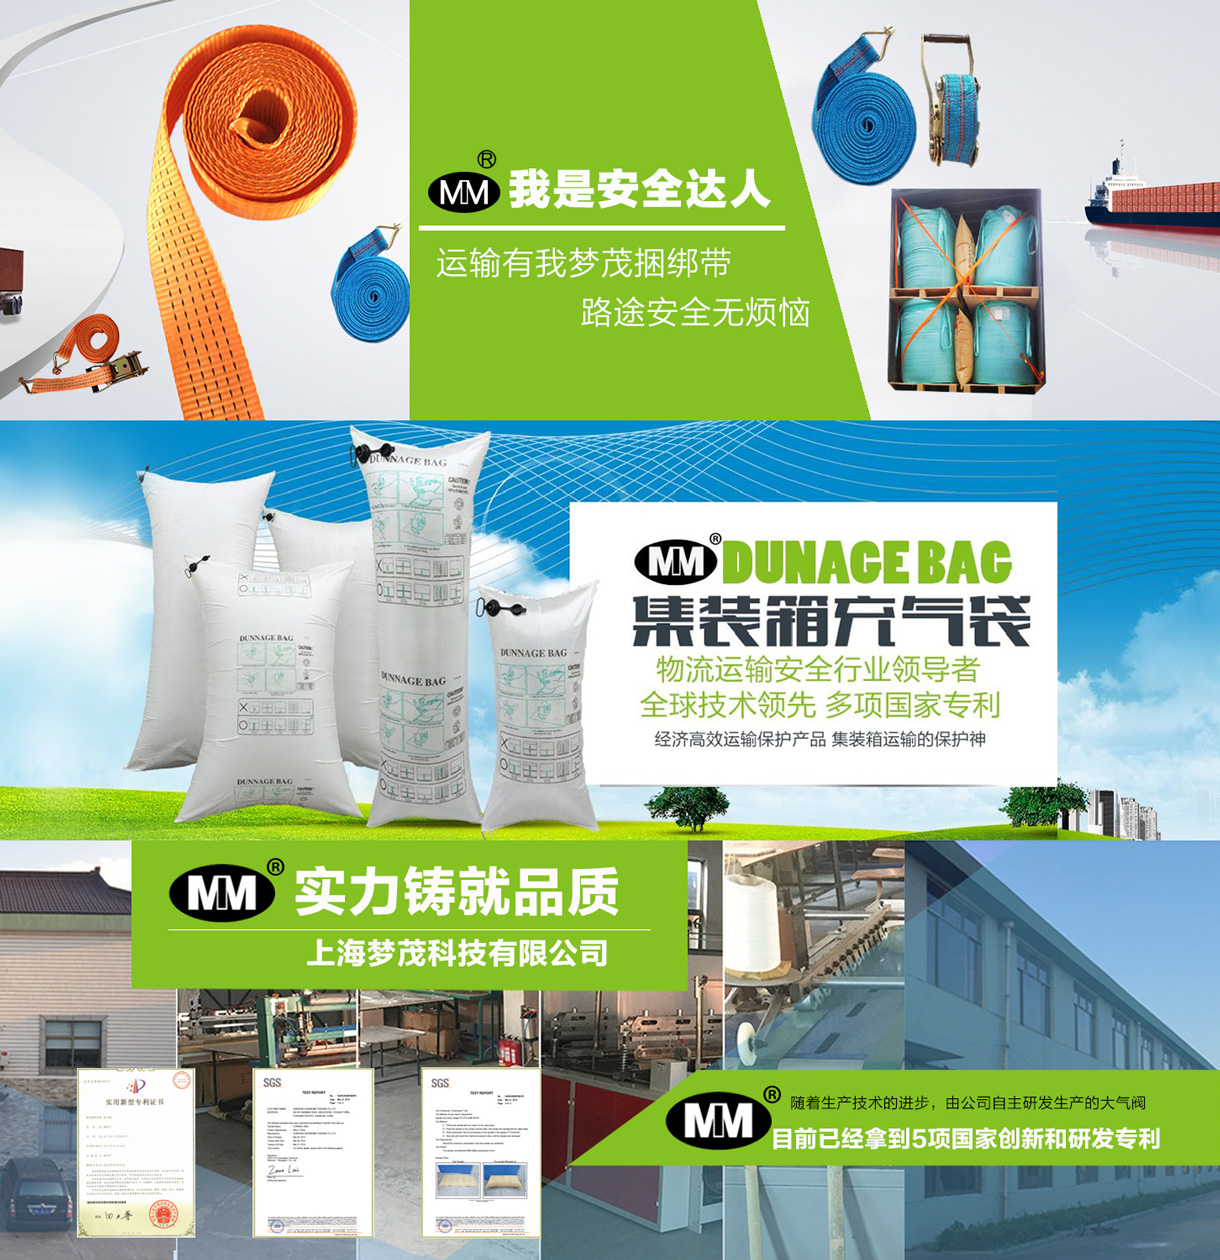 上海梦茂包装科技有限公司-中国国际包装展-中国包装容器展